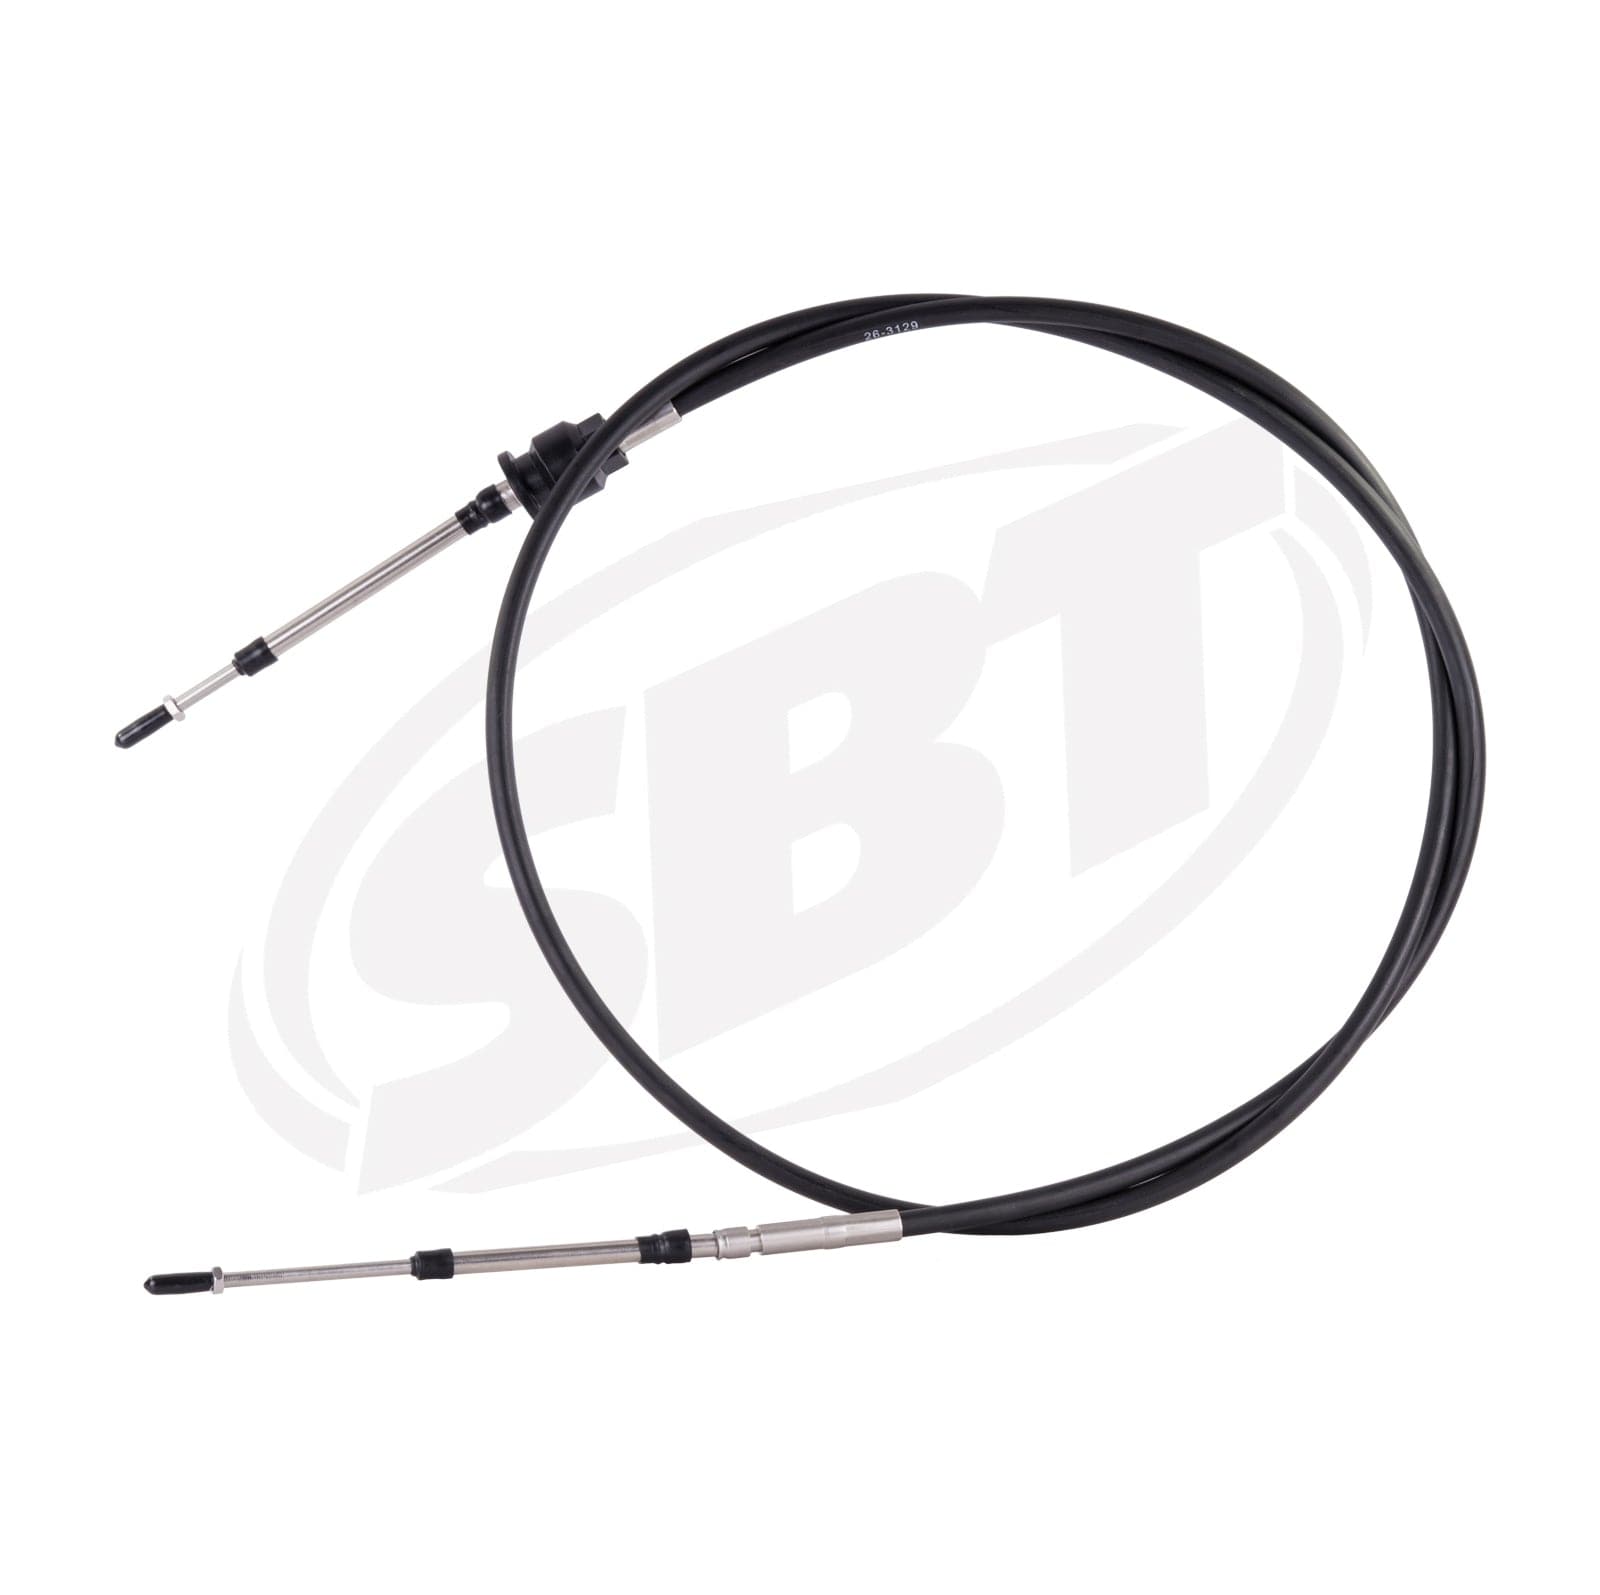 SBT Steering Cable for Sea-Doo GTX DI/GTX 4 Tec/RXT/GTX 155/GTX 155/GTX 215